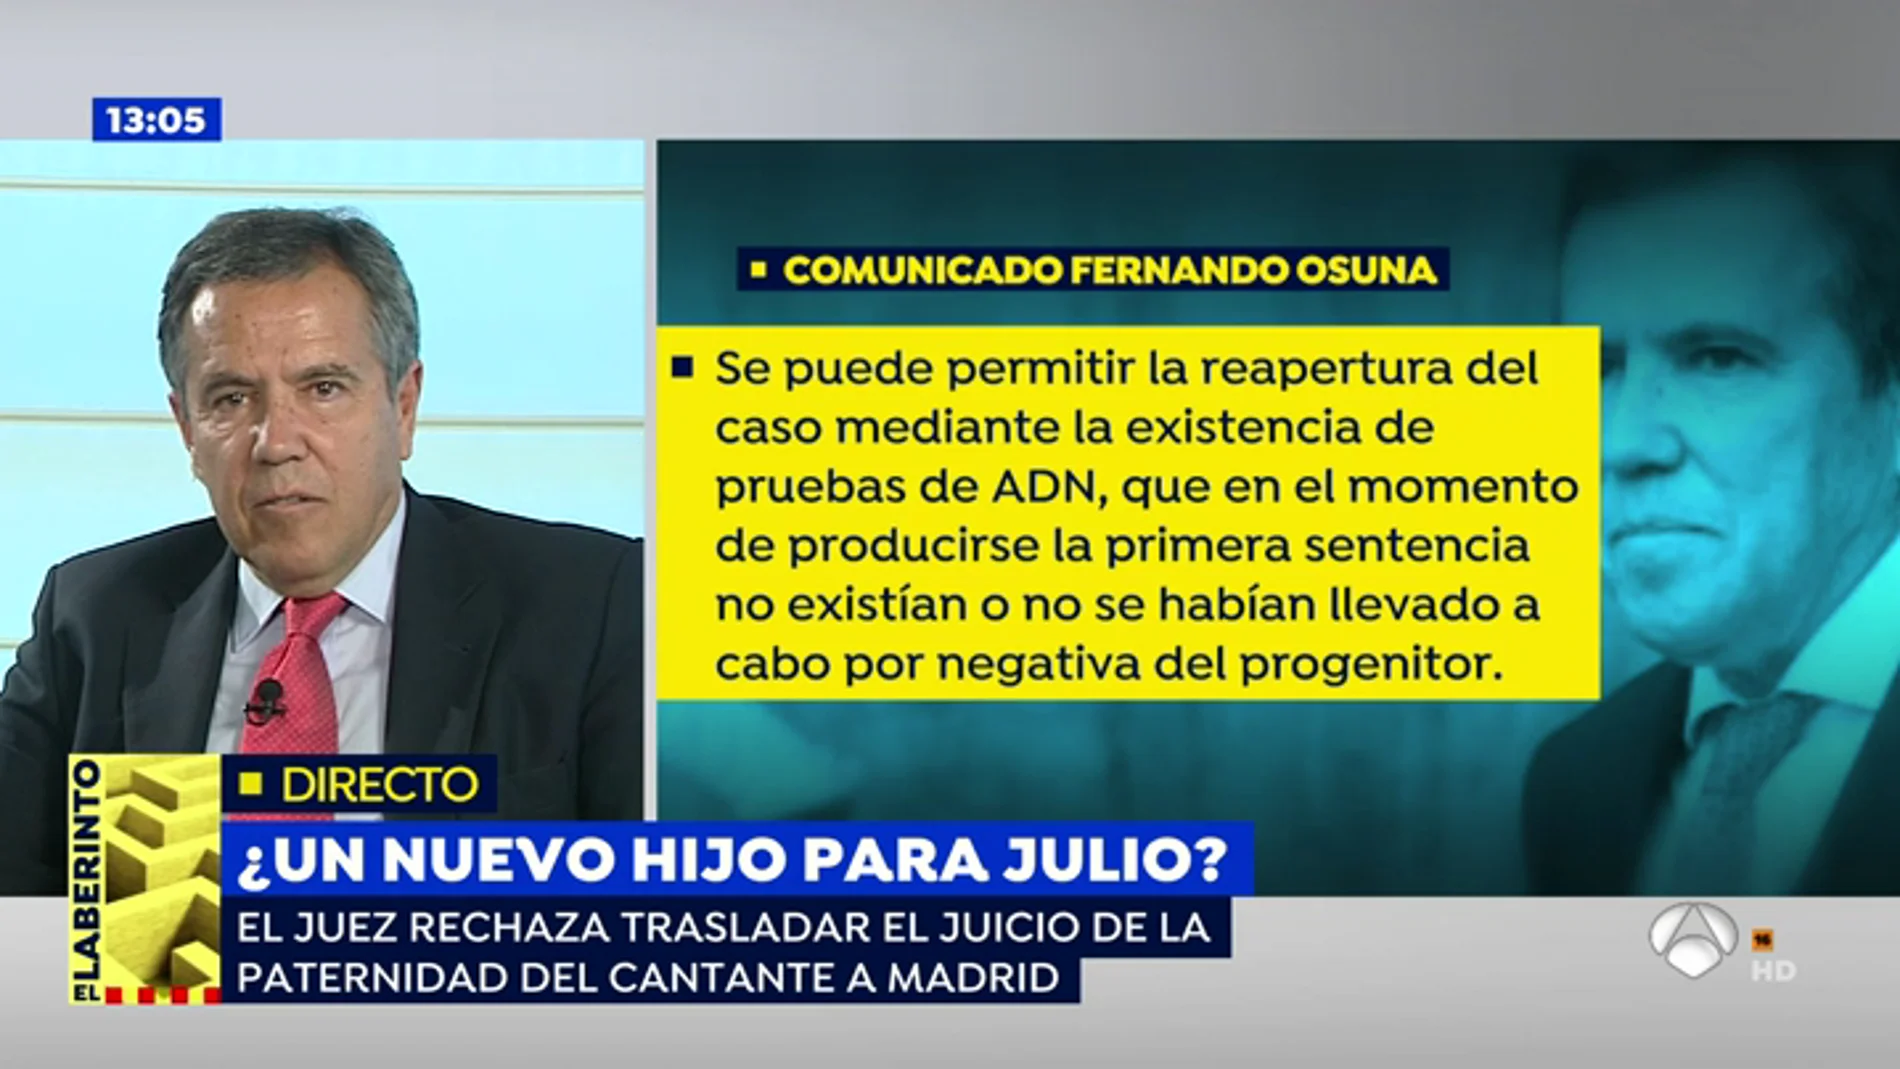 Varapalo judicial para Julio Iglesias: "Tarde o temprano tendrá que asumir la paternidad de su hijo"